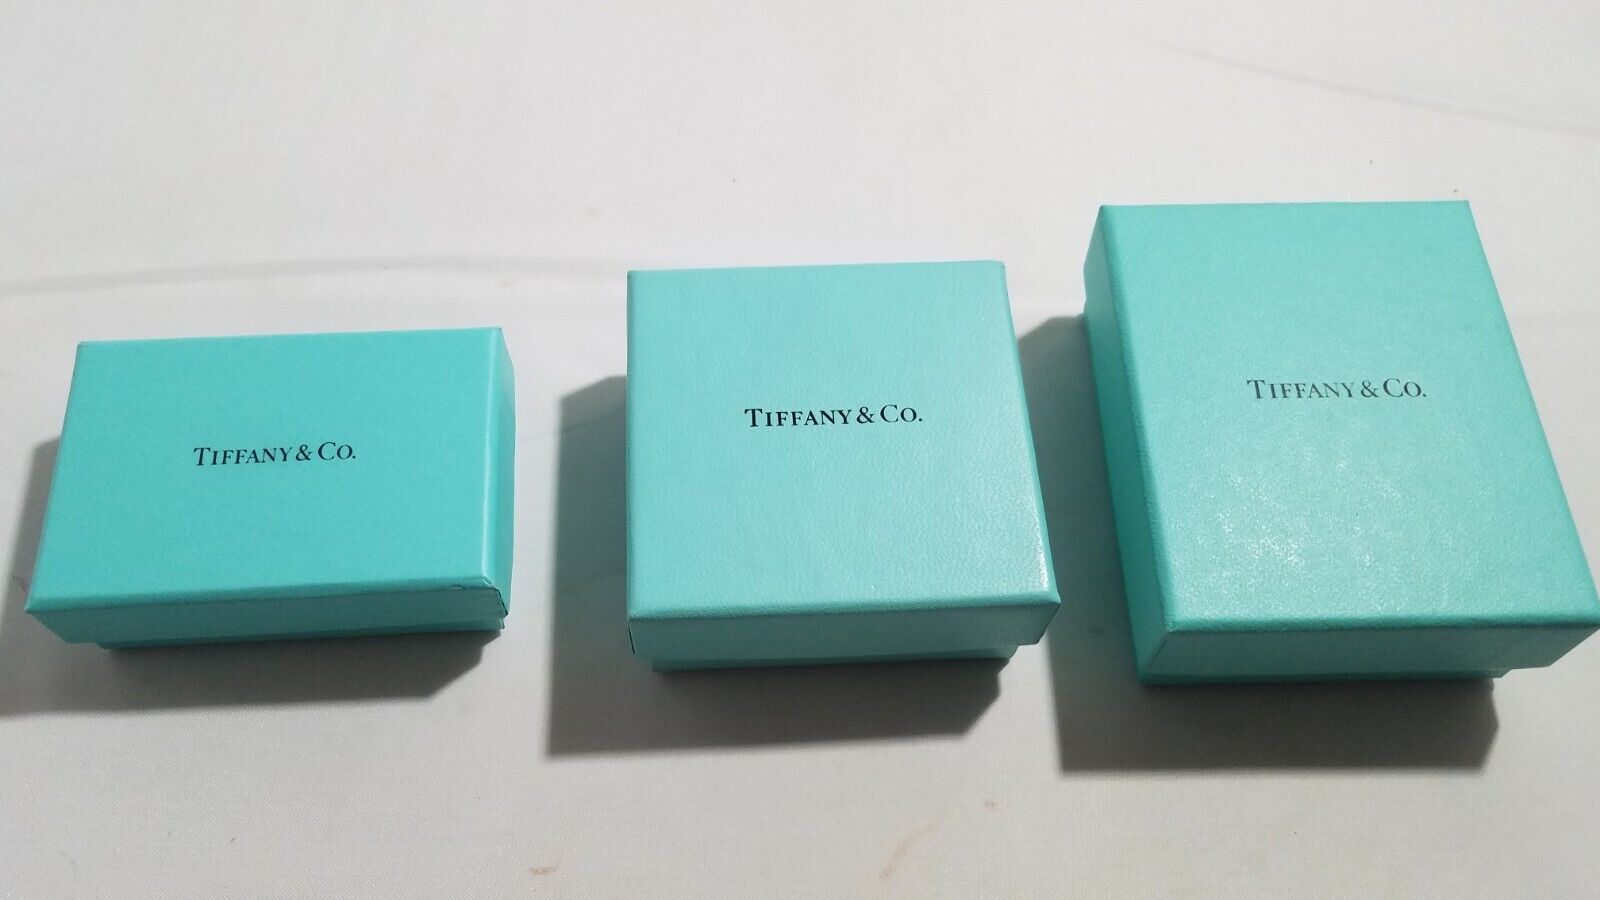 Tiffany & Co EMPTY boxes Tiffany & Co.